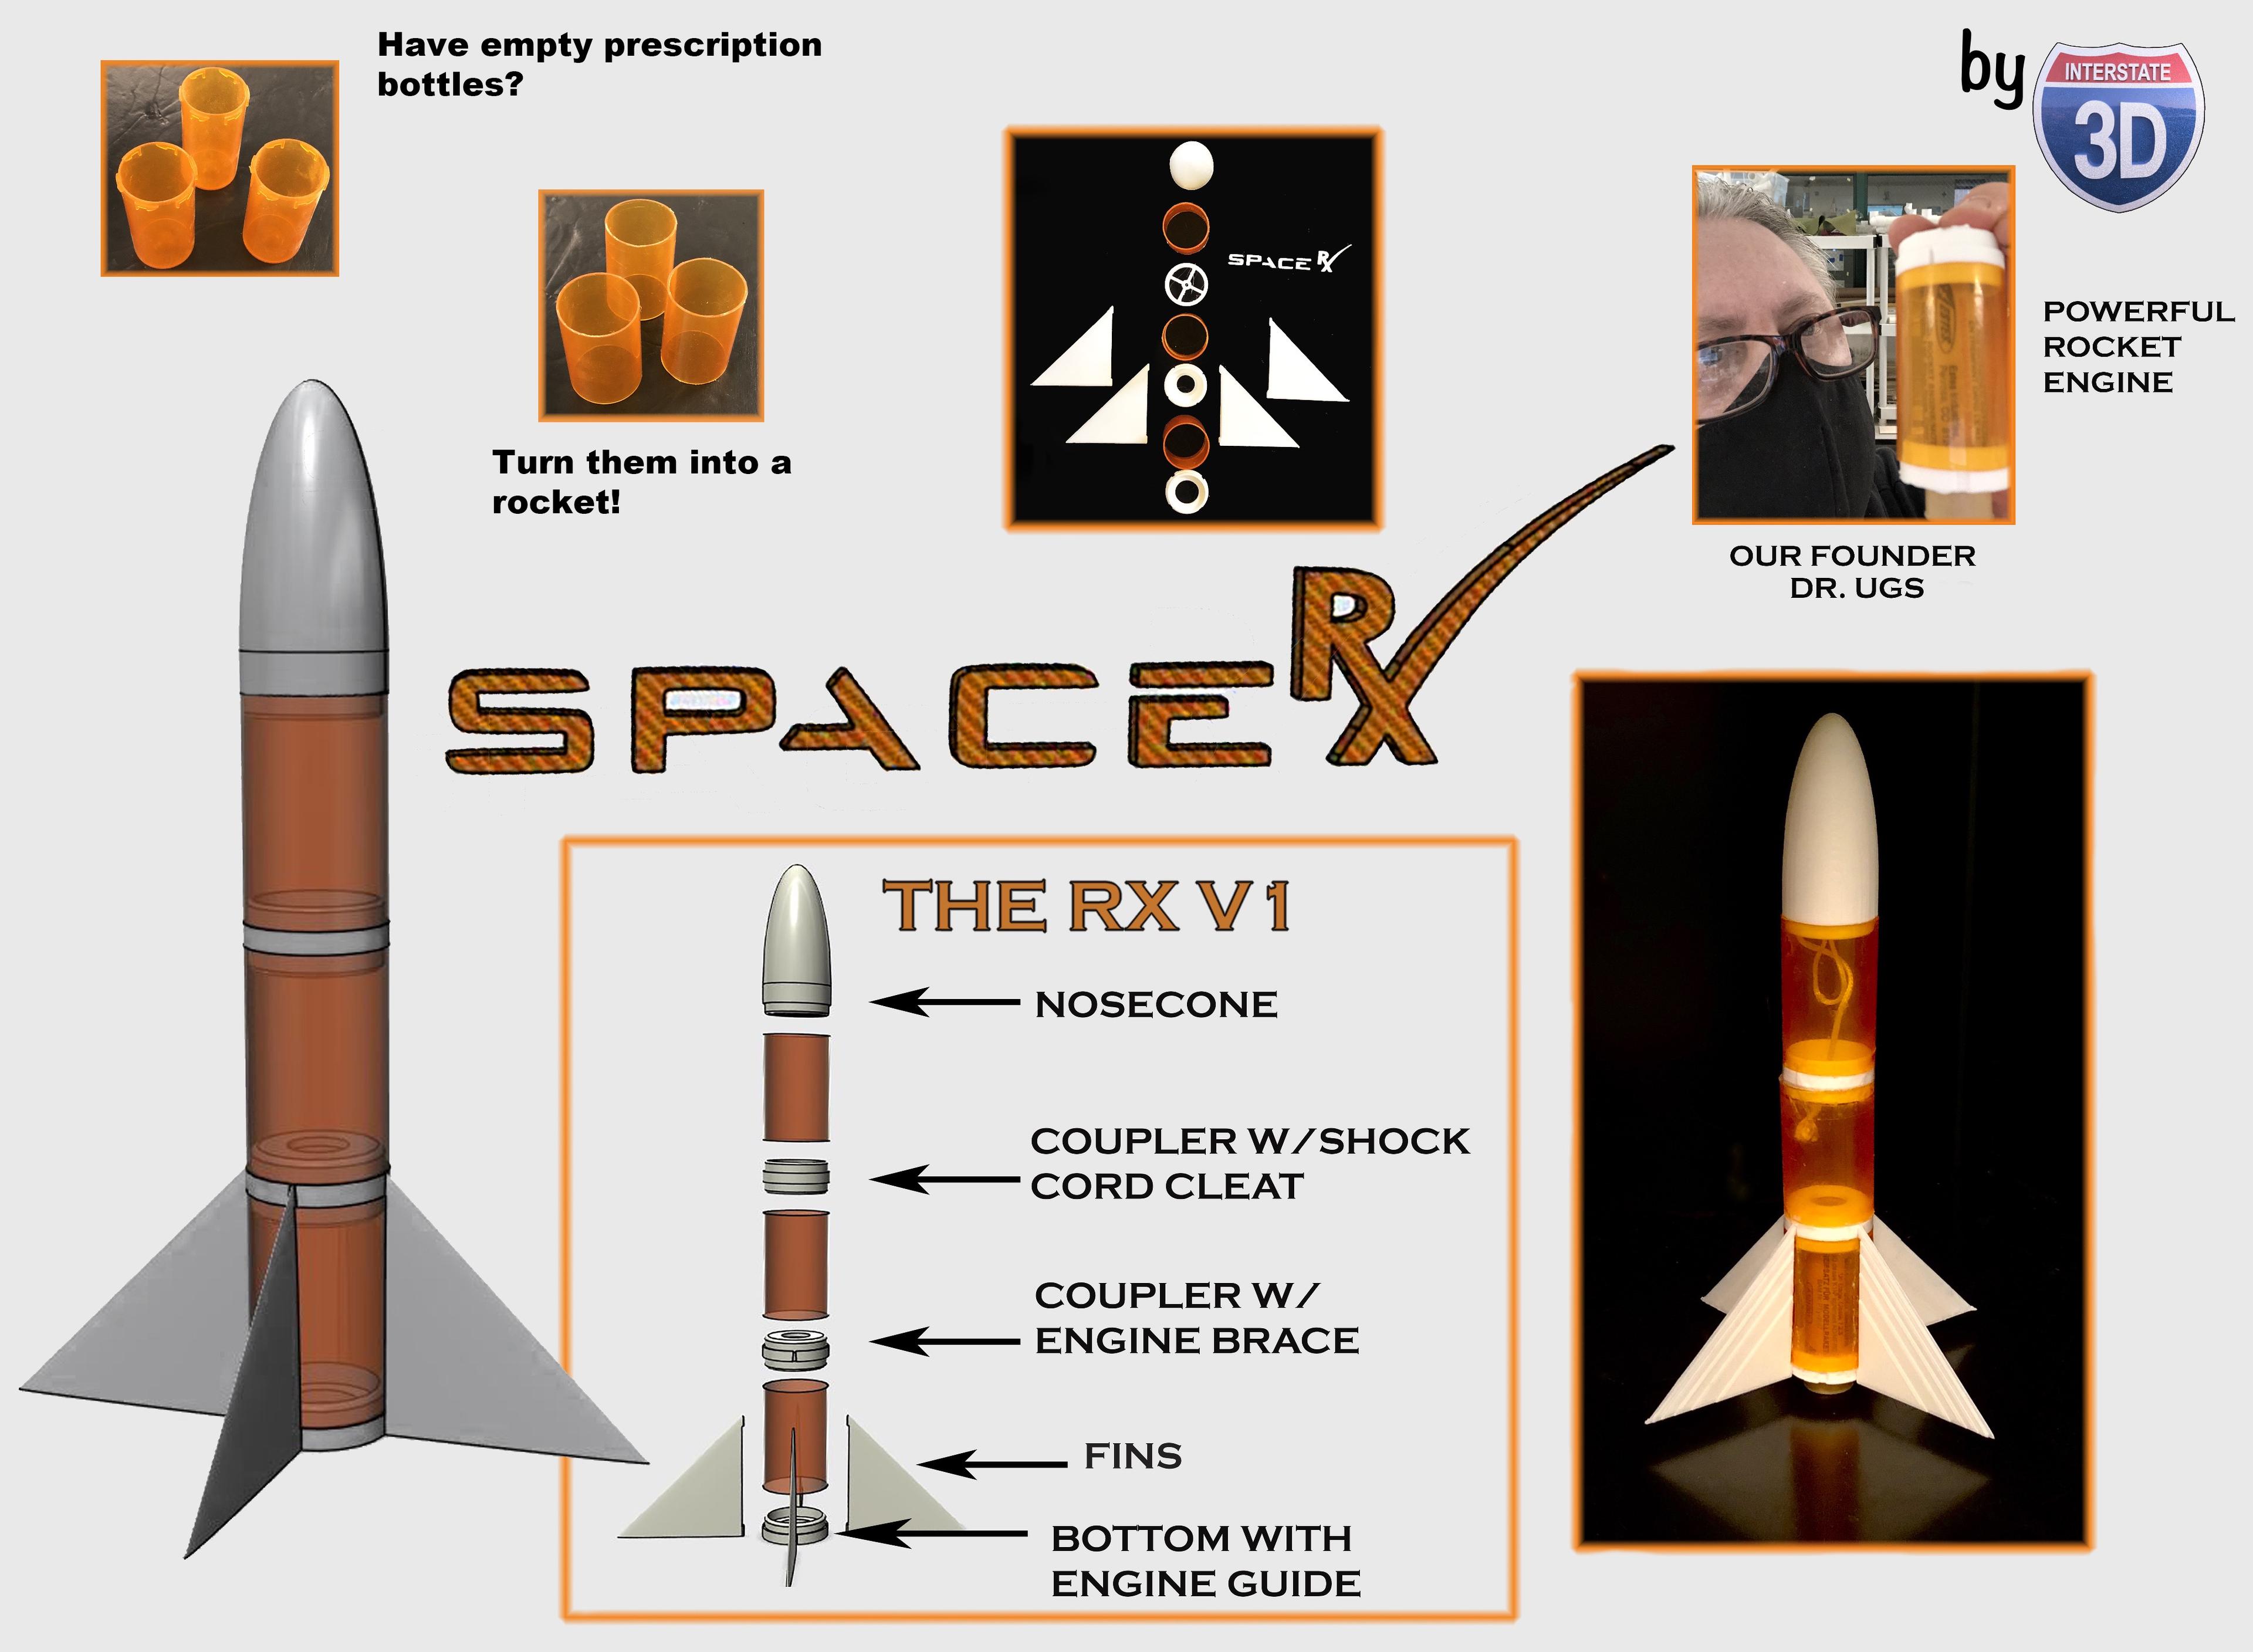 Space RX.stl 3d model